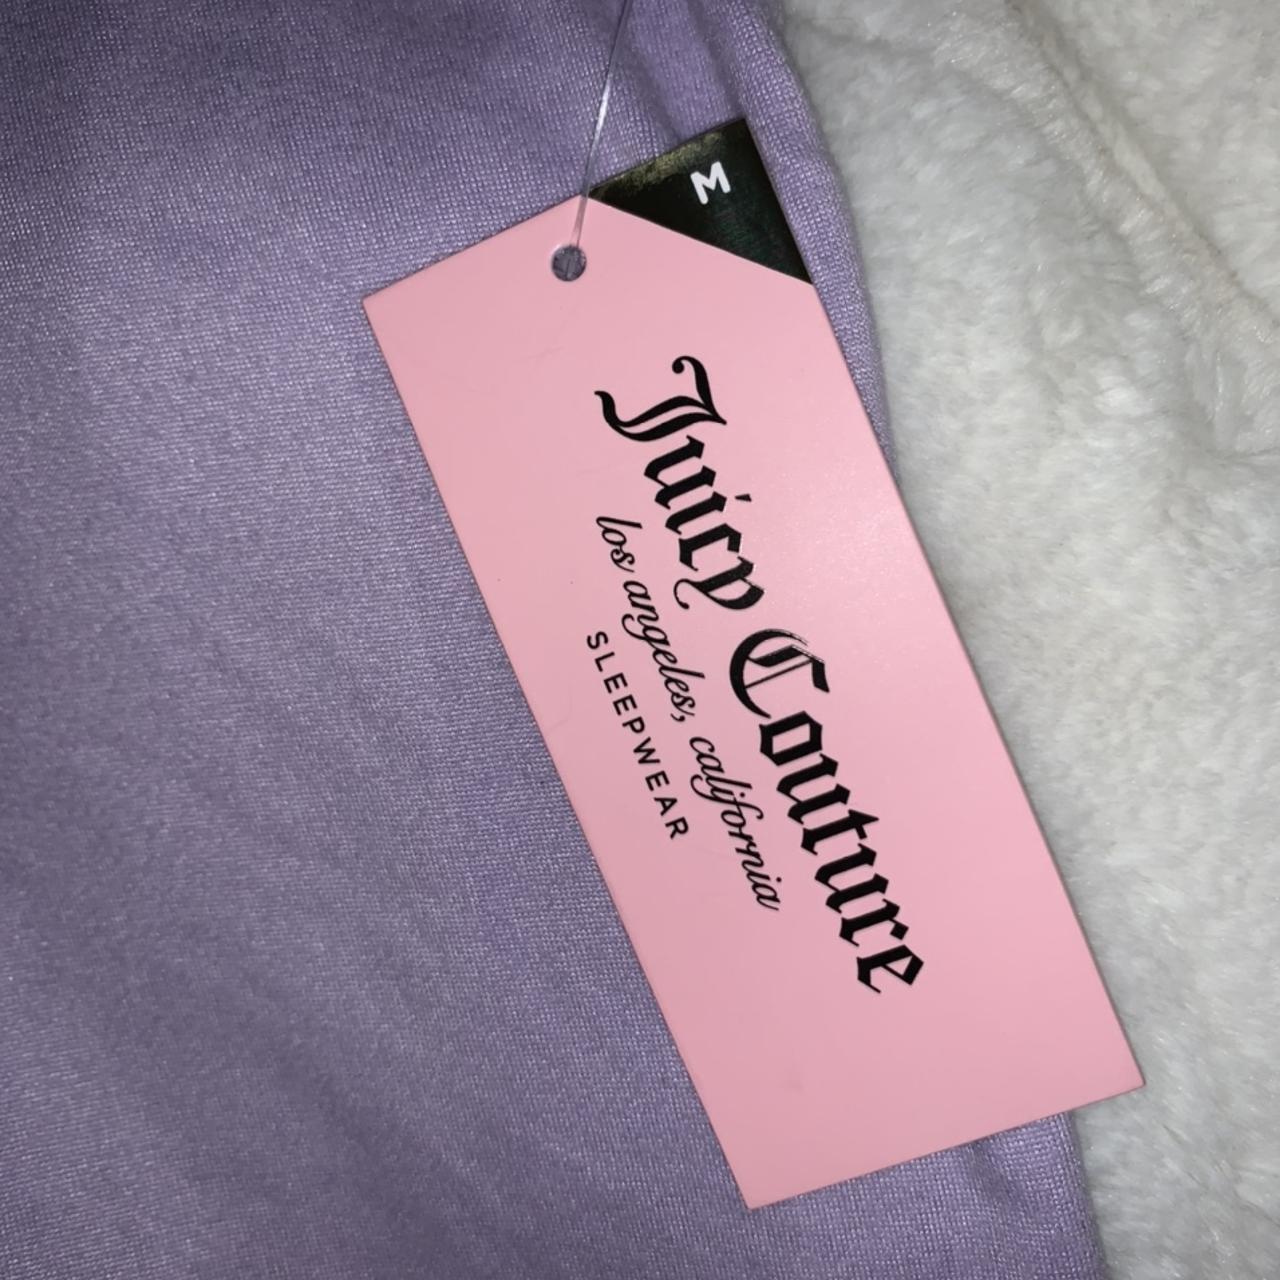 Juicy Couture NWT Sleep Set 🎀, Super cute Juicy